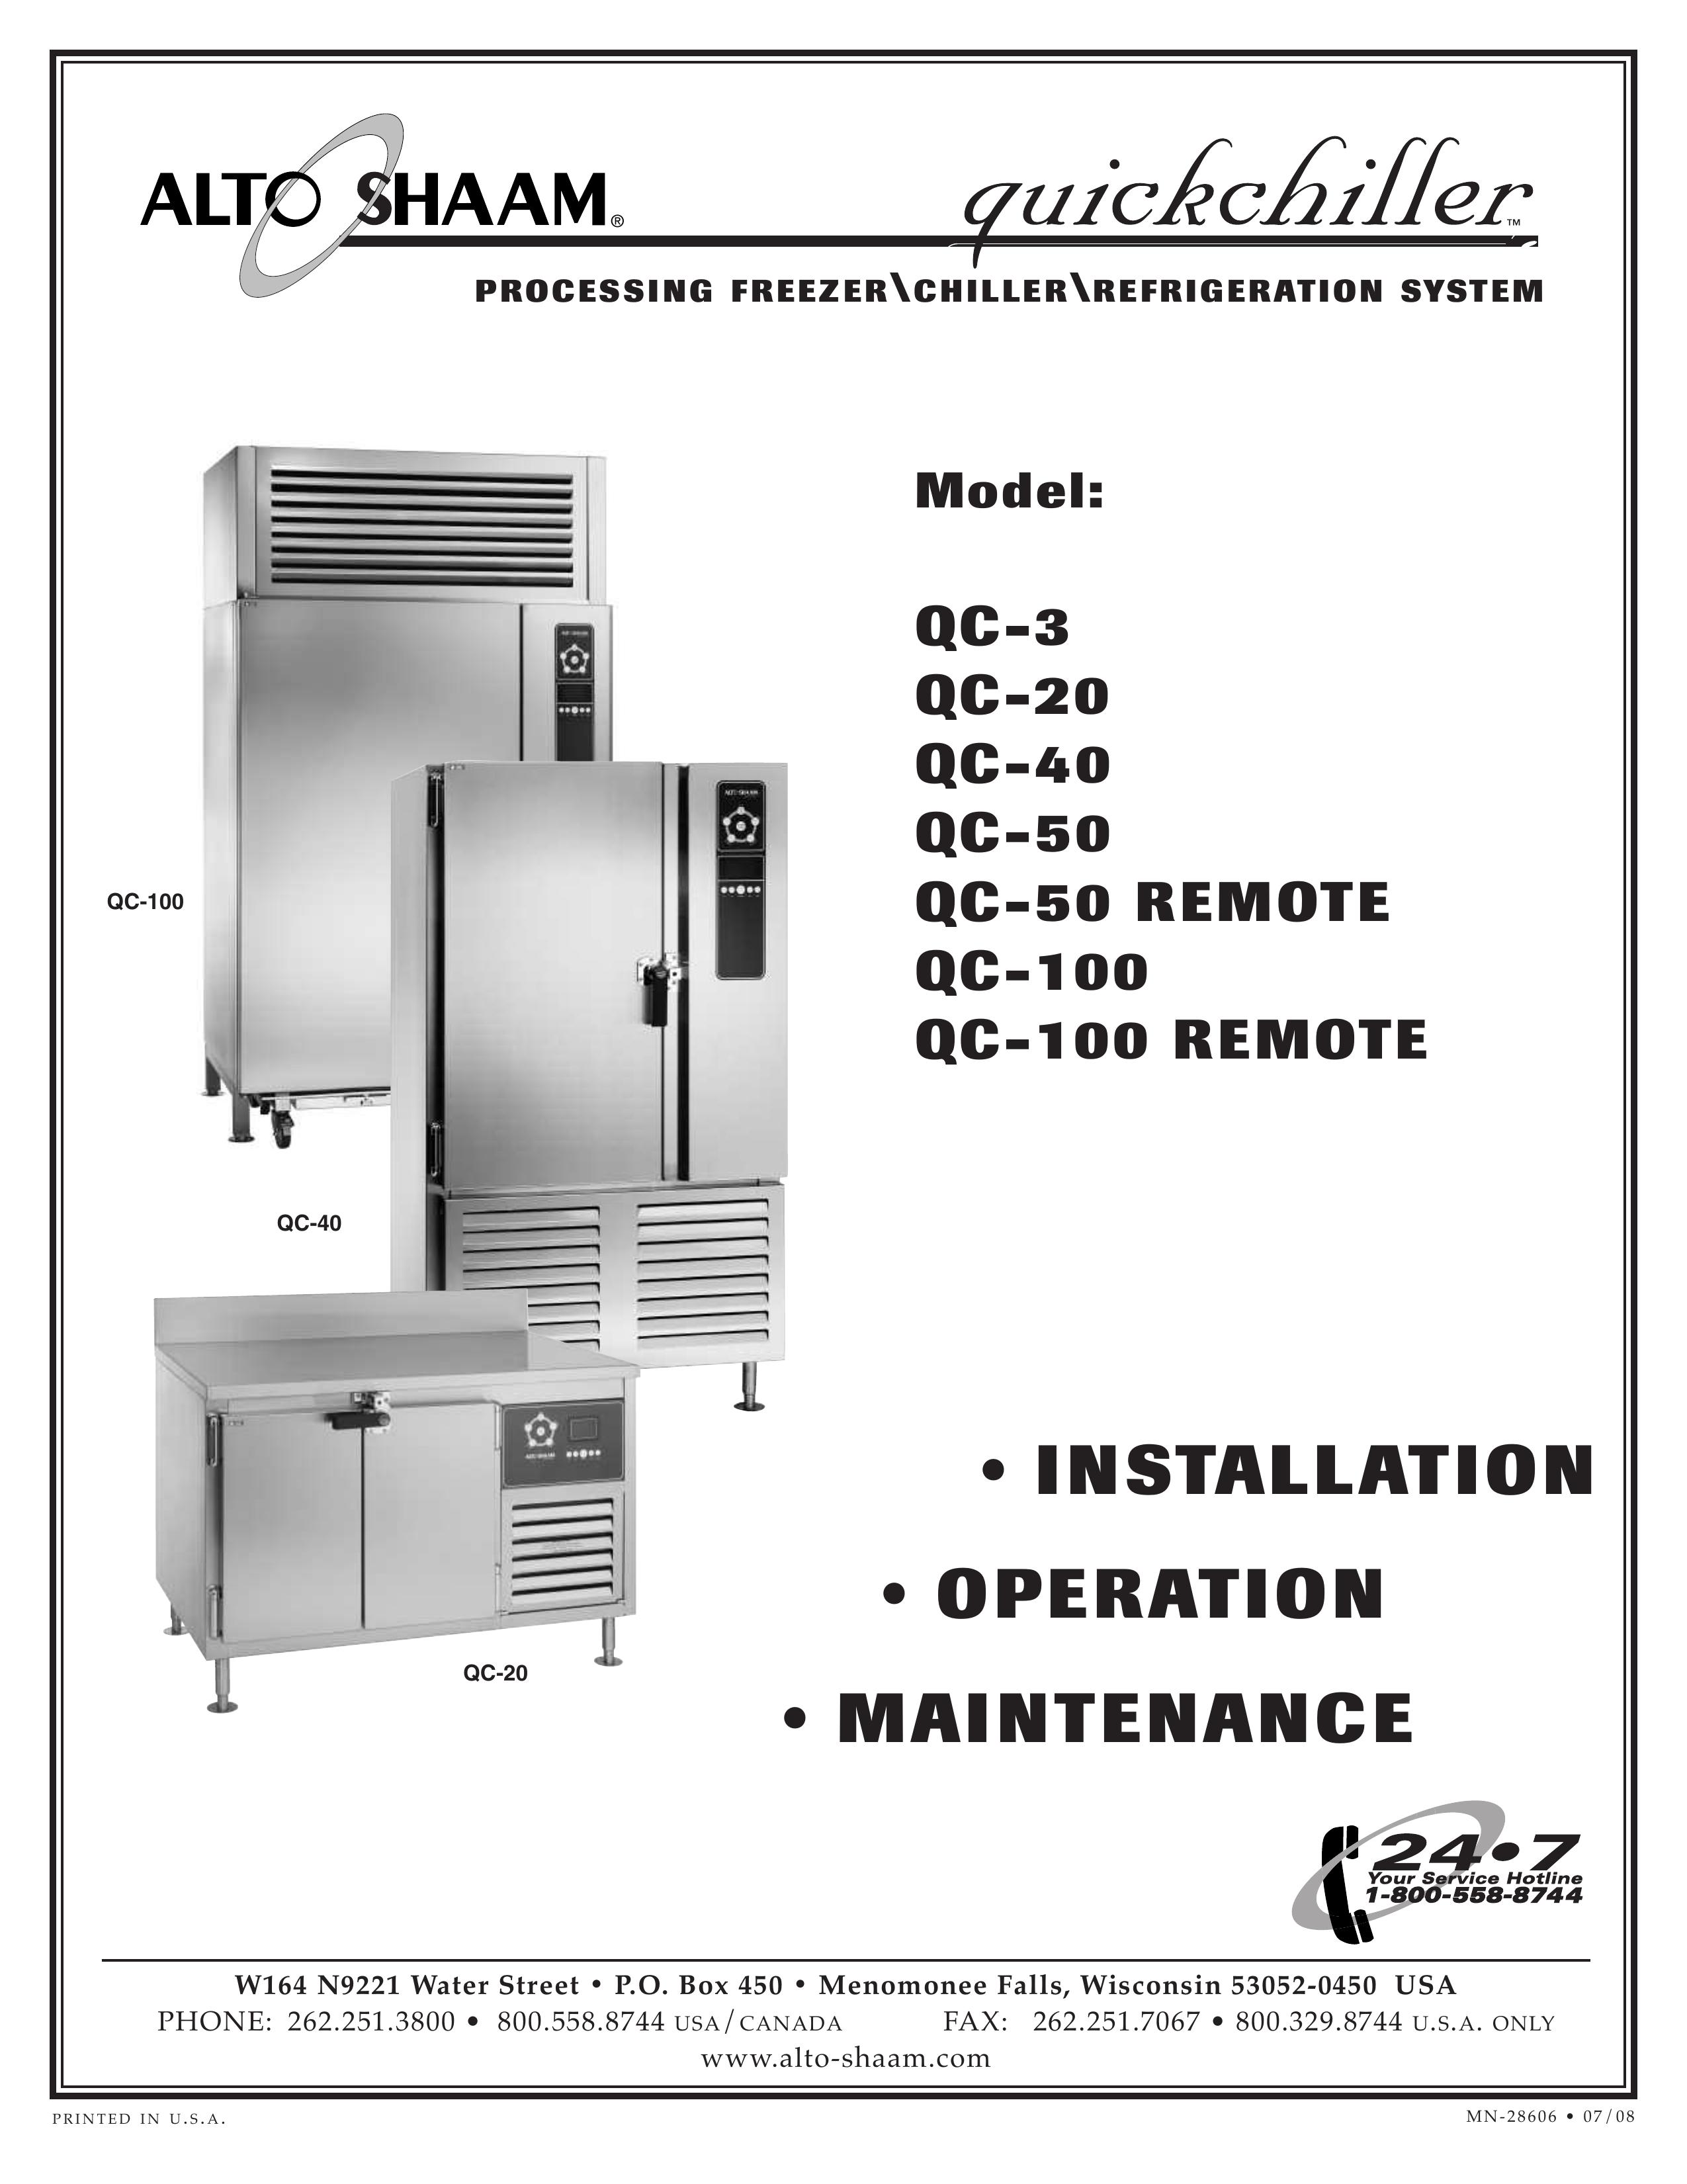 Alto-Shaam QC-50 Refrigerator User Manual